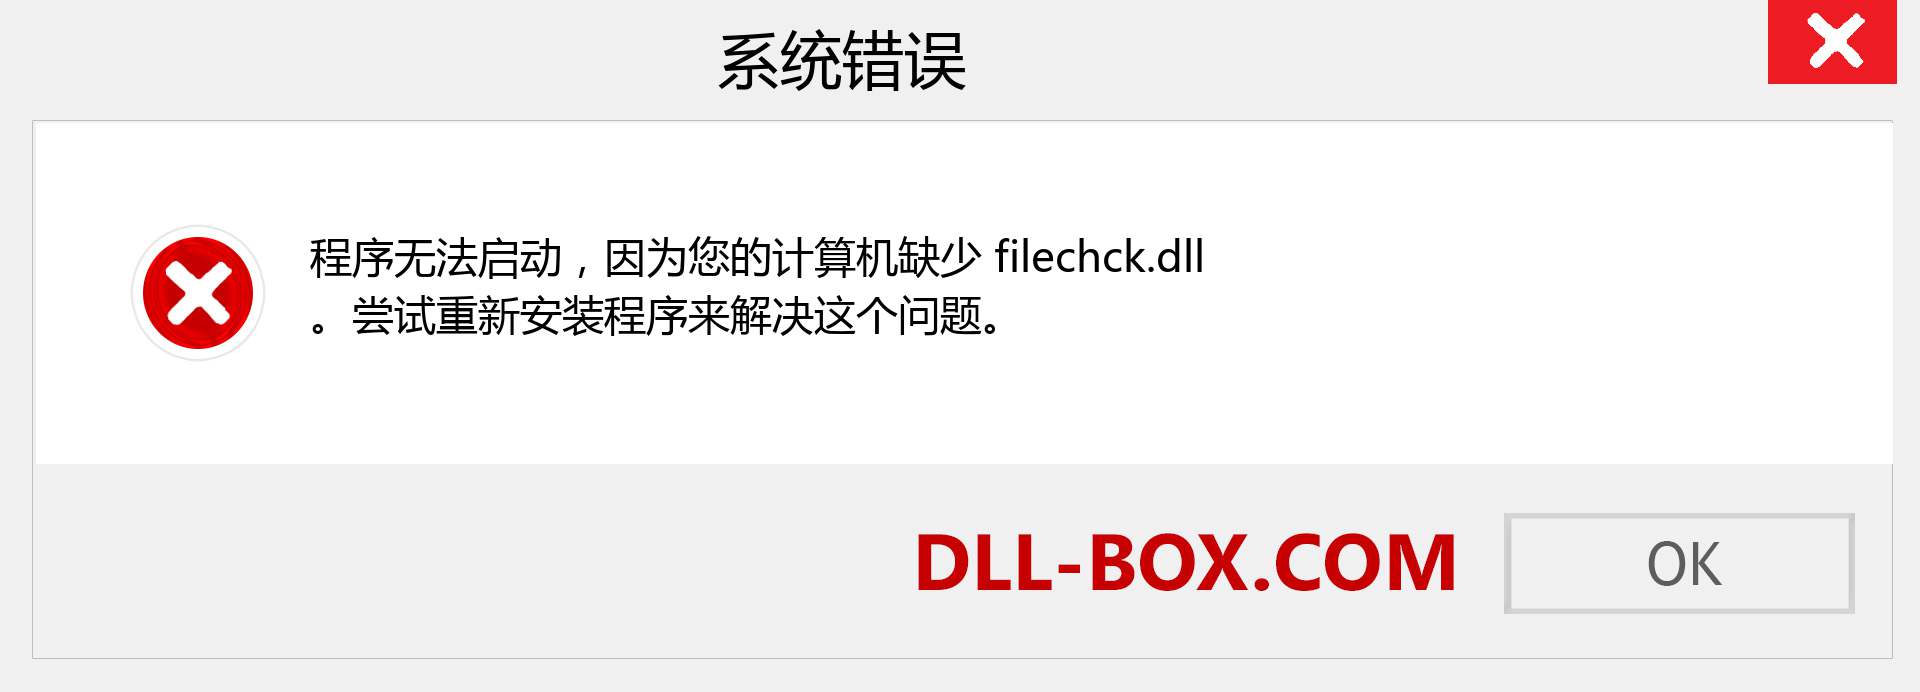 filechck.dll 文件丢失？。 适用于 Windows 7、8、10 的下载 - 修复 Windows、照片、图像上的 filechck dll 丢失错误